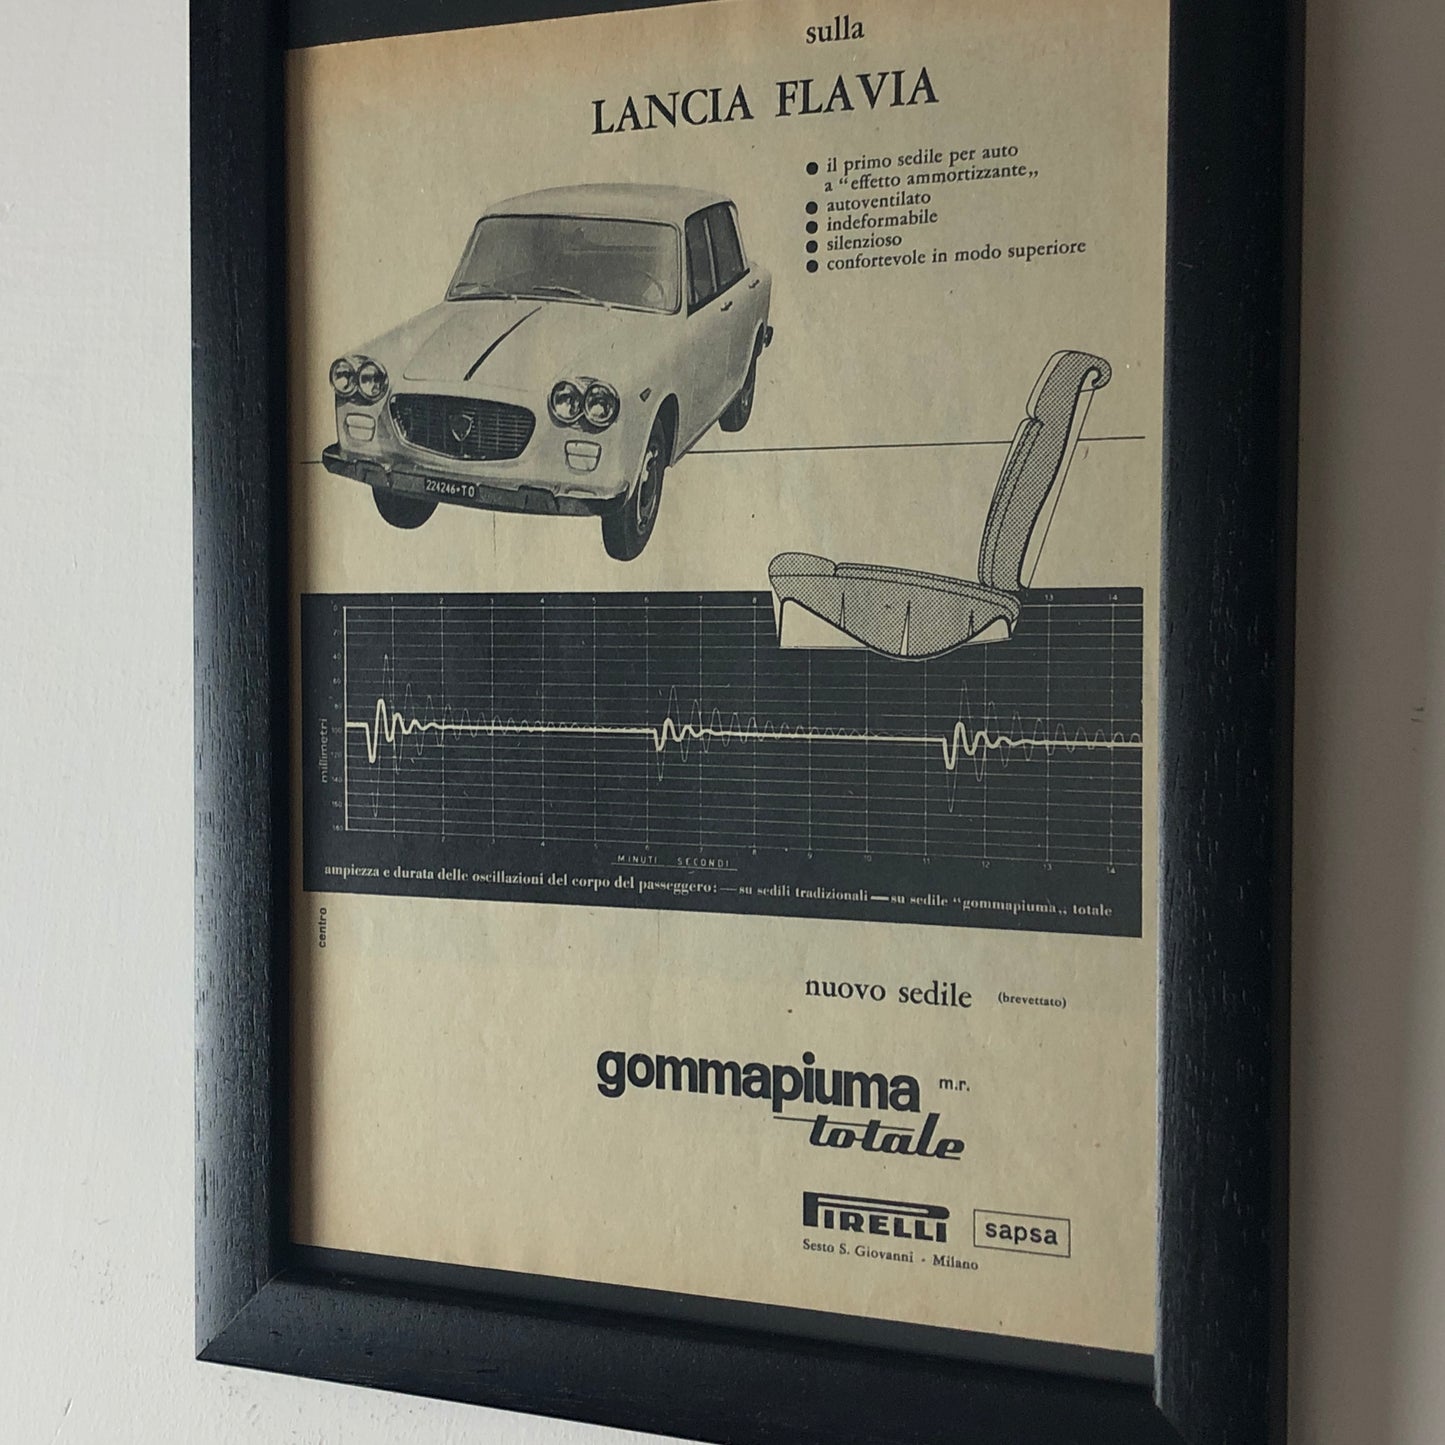 Pirelli e Lancia, Pubblicità Anno 1960 la Lancia Flavia è Equipaggiata con il Primo Sedile a "Effetto Ammortizzante" Pirelli